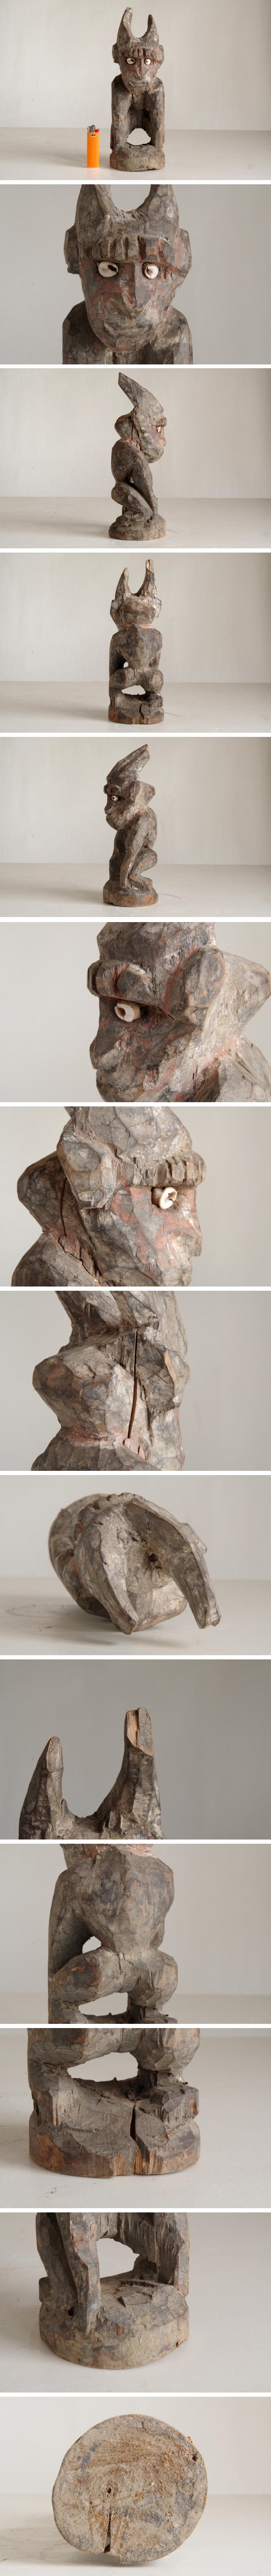 時代 アフリカ 木彫り 猿 プリミティブ アート W 9.5cm O 11cm H 29cm  JChere雅虎拍卖代购